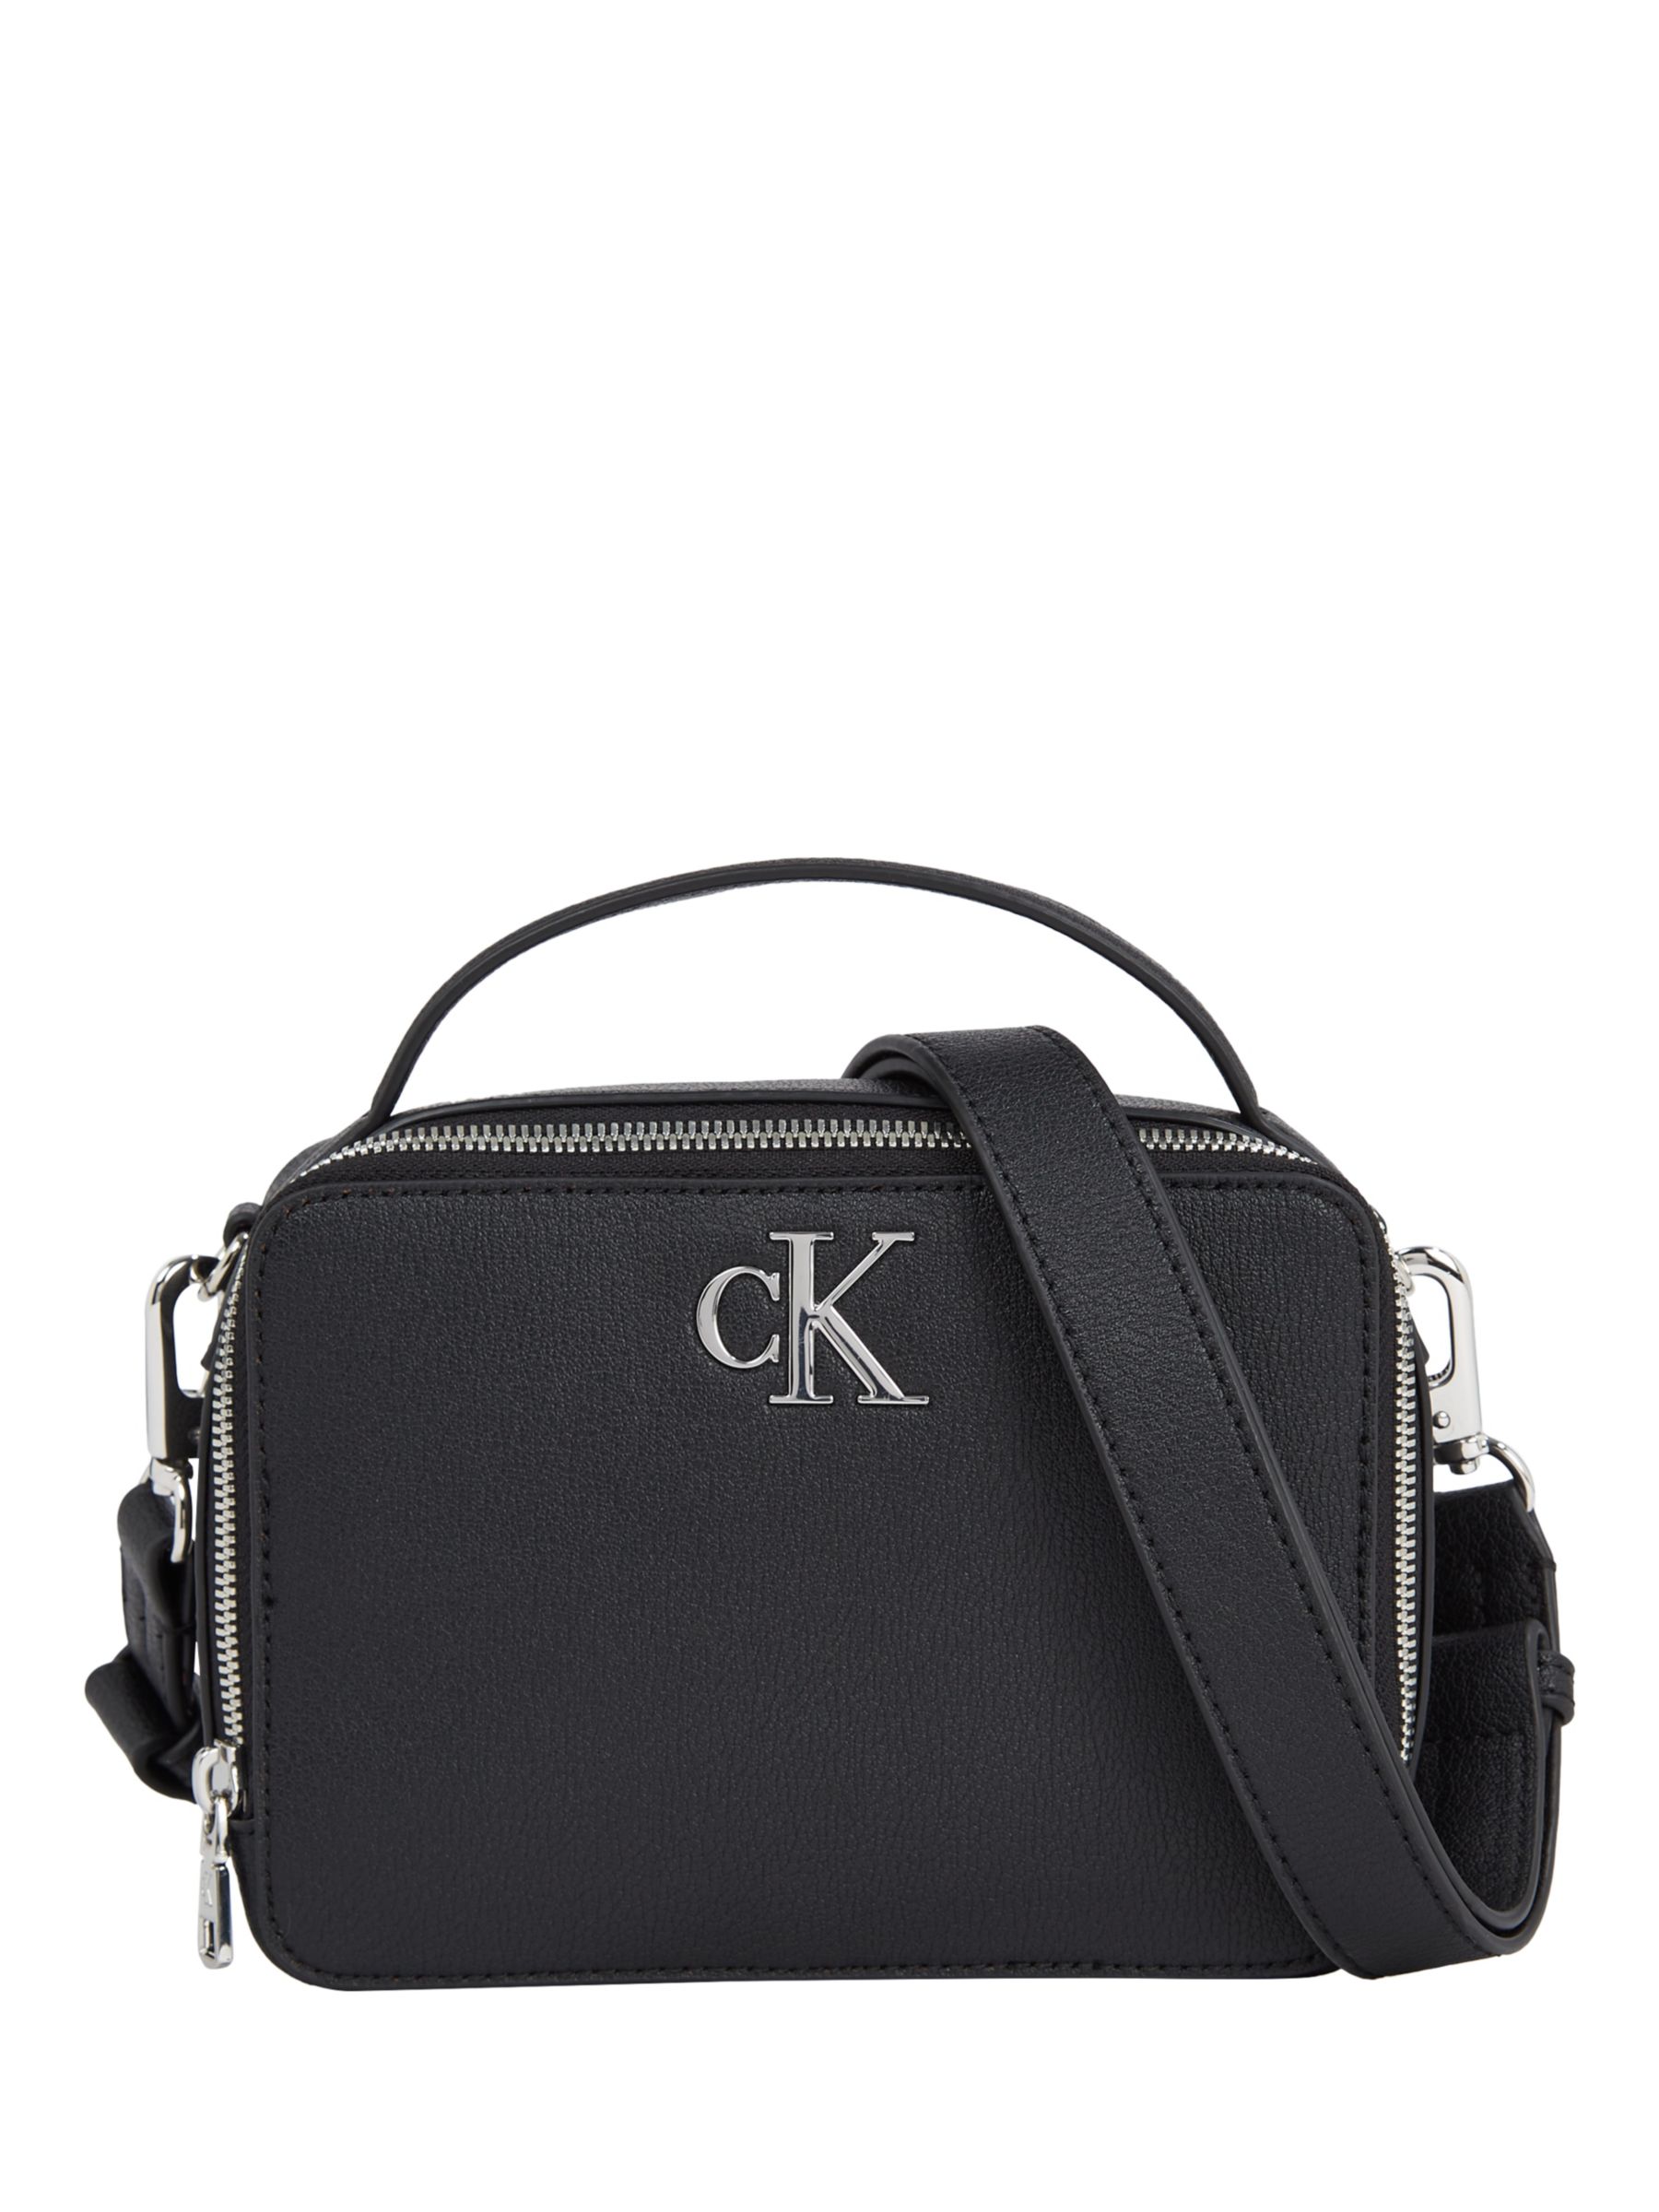 Calvin Klein Minimal Monogram Camera Bag, Black at John Lewis & Partners